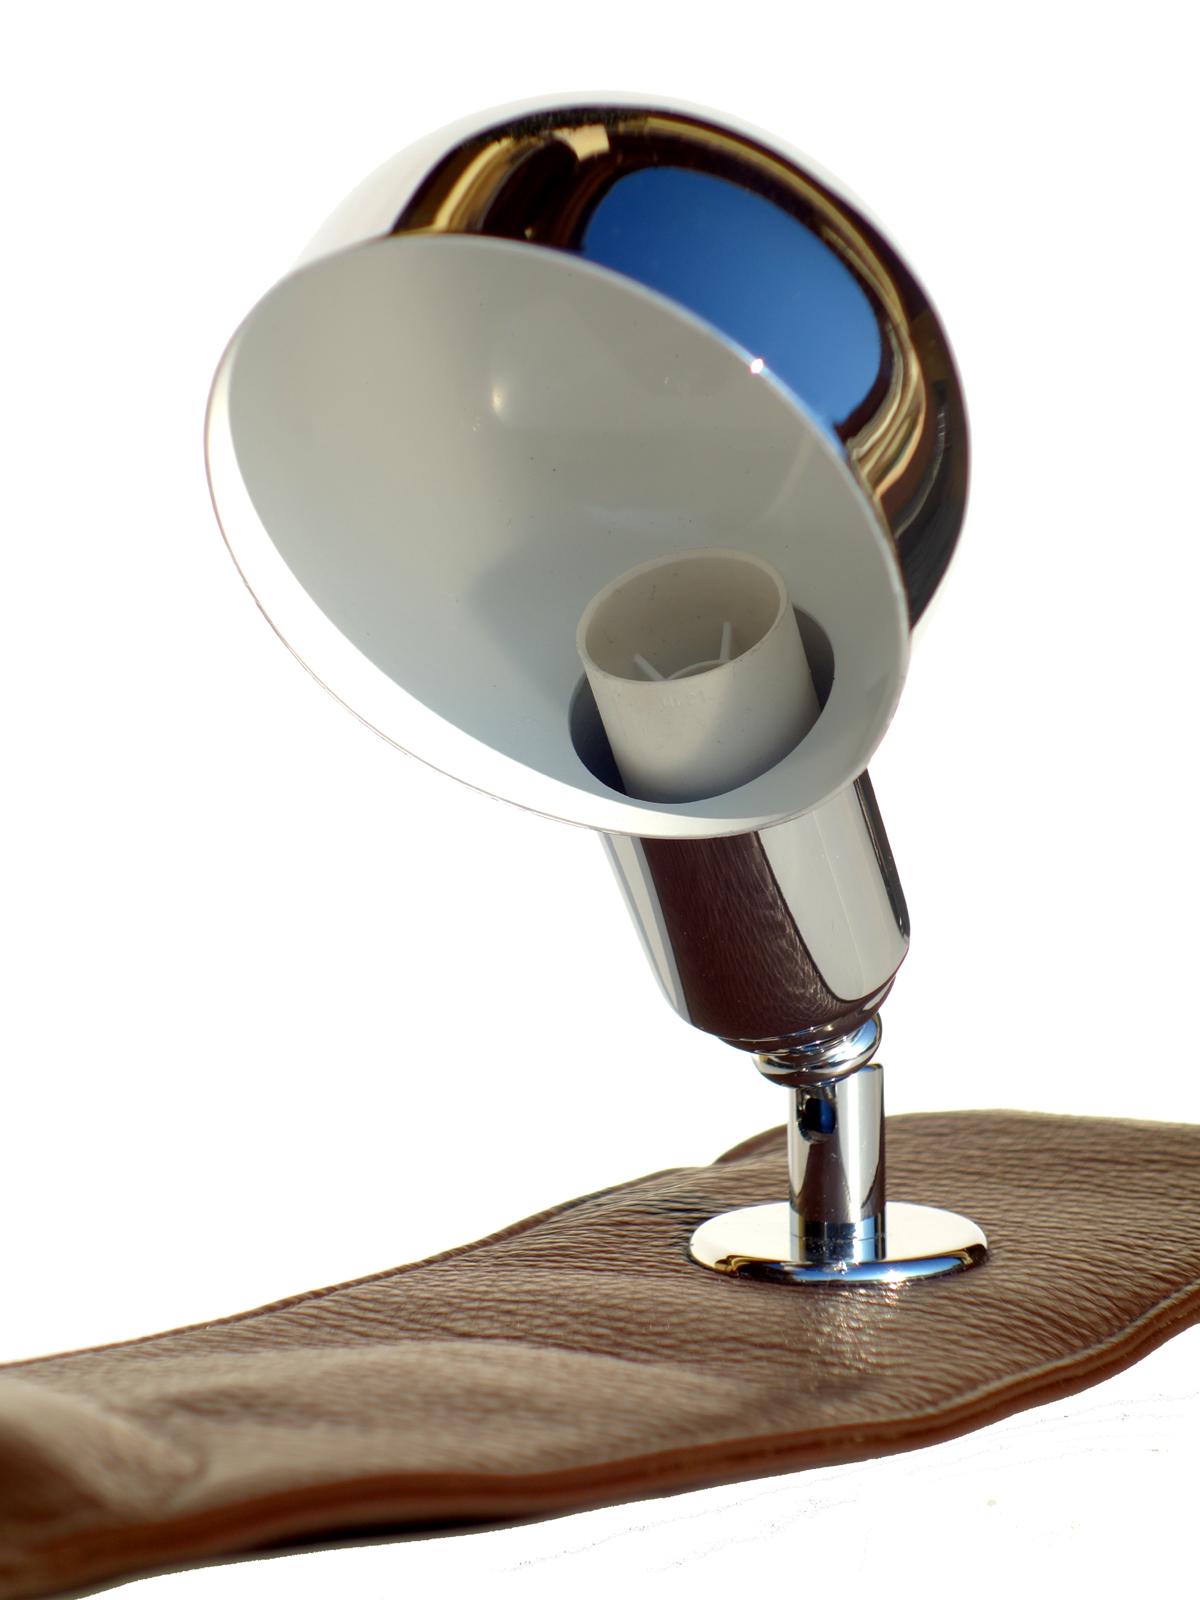 LP01 lampada da poltrona
Luigi Caccia Dominioni
Azucena, 1979 

Diffusore cromato verniciato bianco nella parte interna
Pelle marrone in perfetto stato di conservazione
Perfettamente funzionante
 